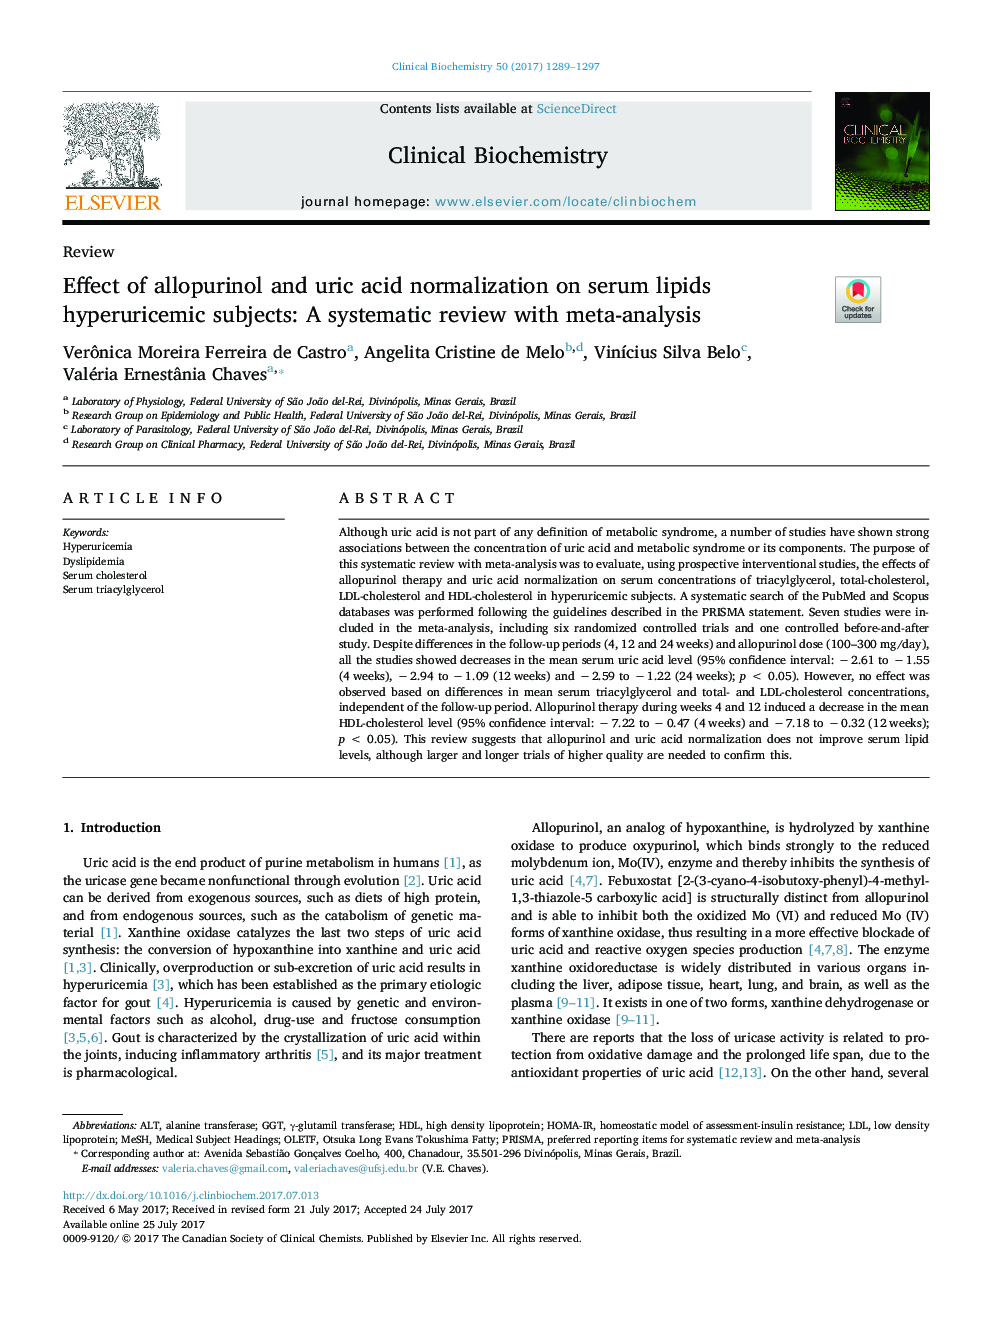 اثر آلوپورینول و نرمال اسید اوریک بر روی افراد مبتلا به هیپوروسیتمی لیپید سرم: یک بررسی سیستماتیک با متاآنالیز 